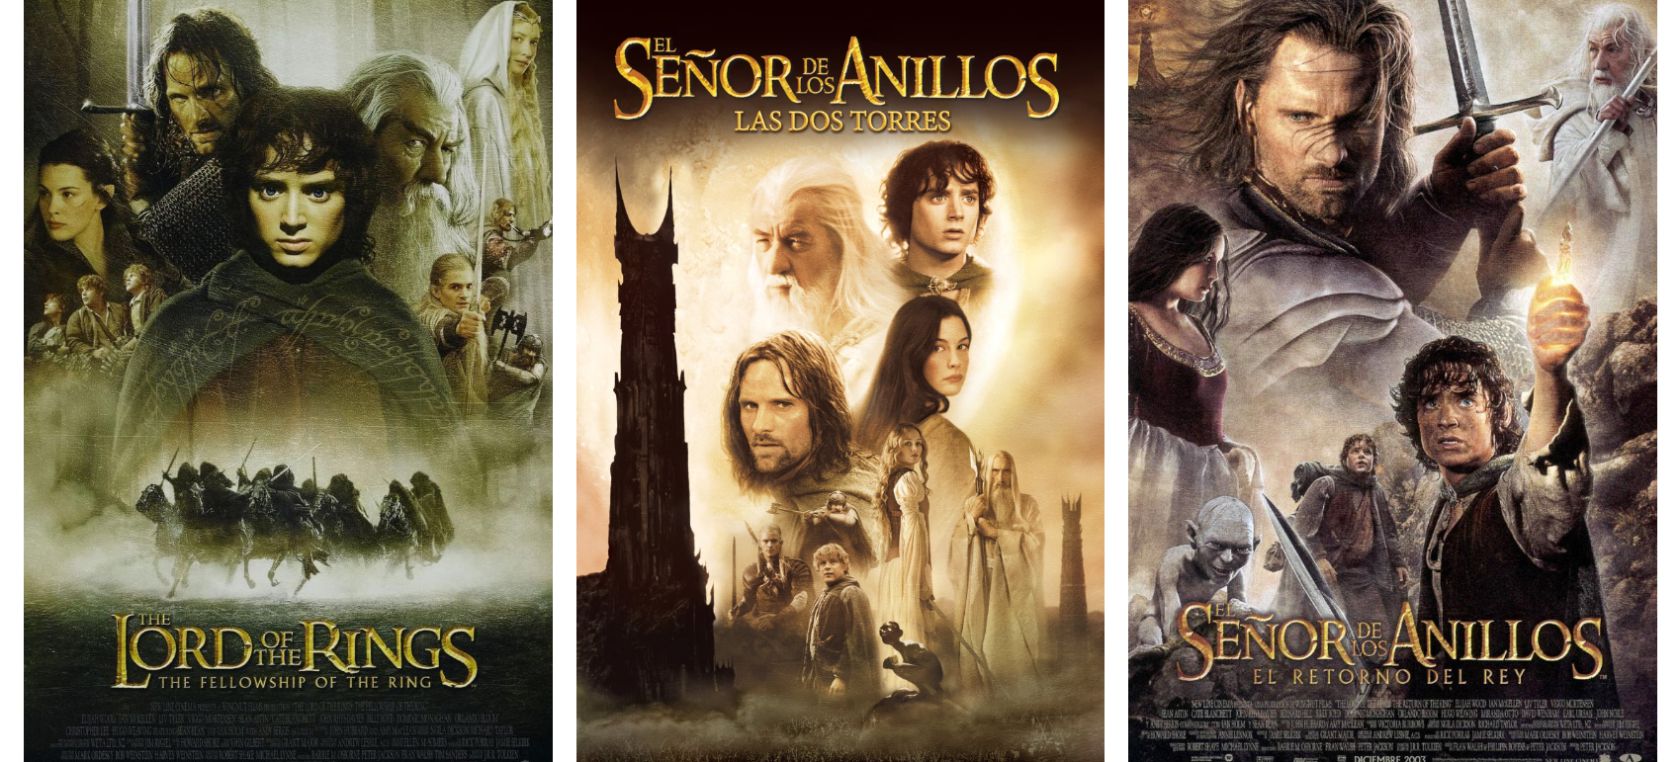 Trilogía "El señor de los anillos" en Cineteca Alameda